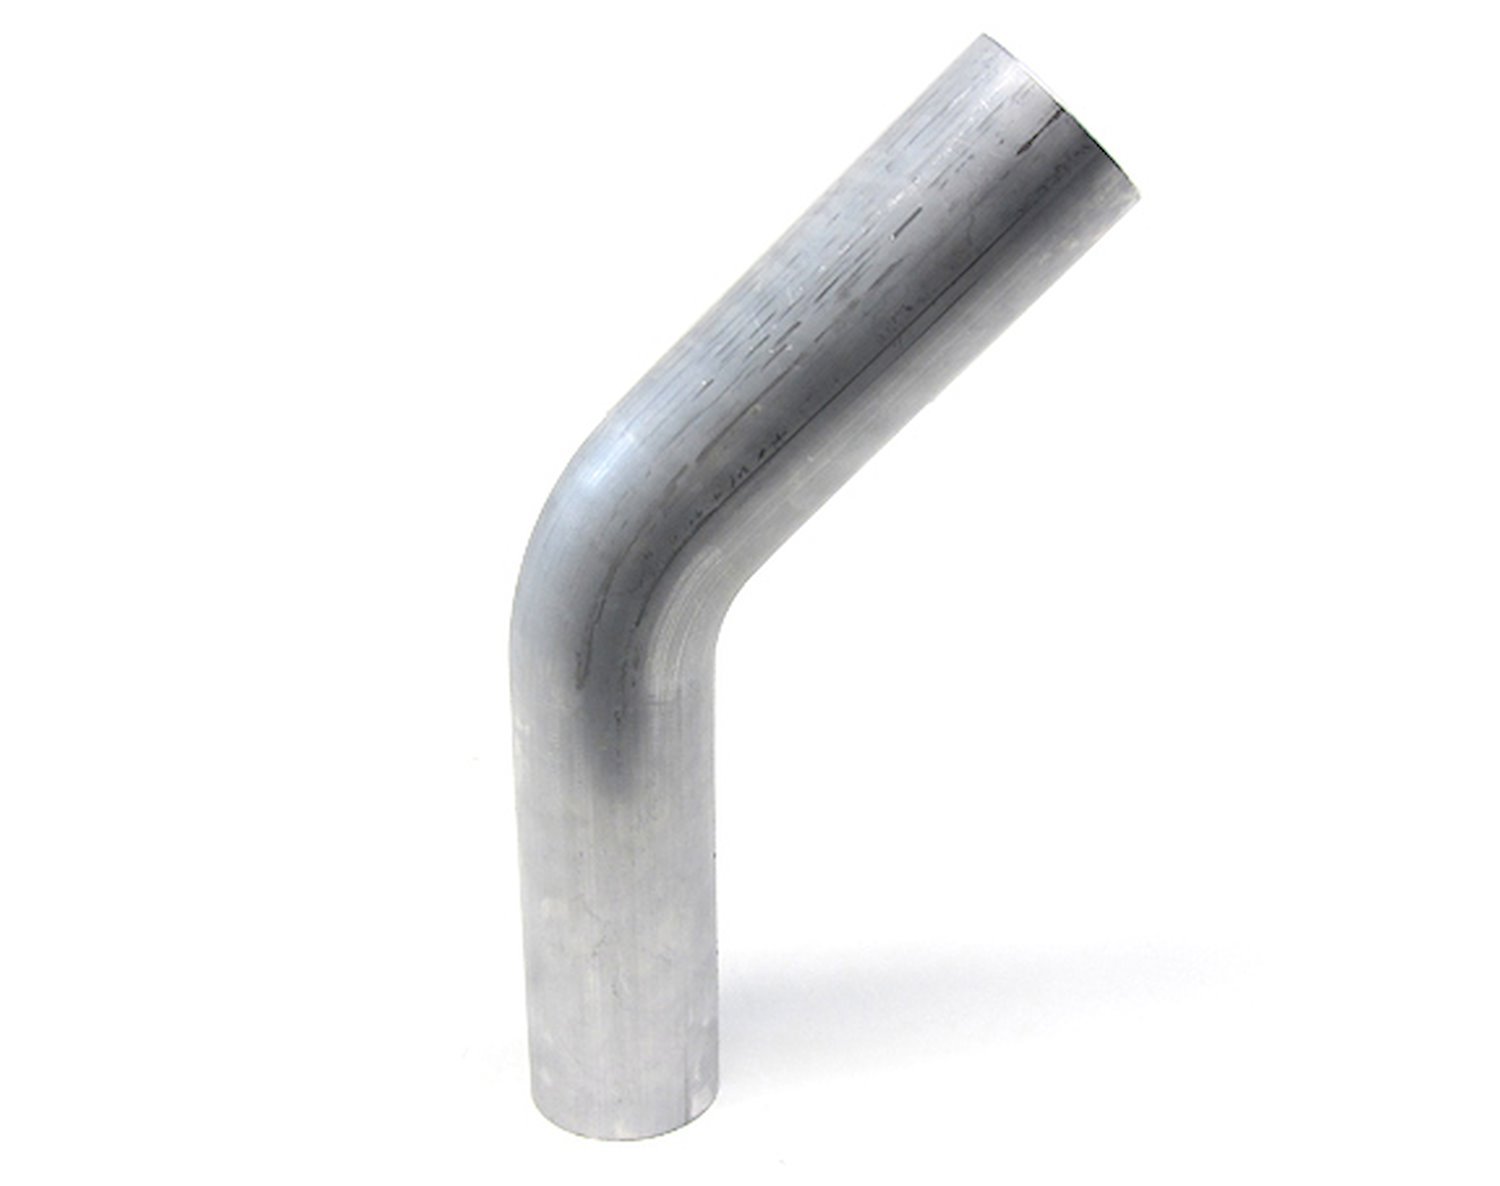 AT45-350-CLR-56 Aluminum Elbow Tube, 6061 Aluminum, 45-Degree Bend Elbow Tubing, 3-1/2 in. OD, Large Radius, 5-5/8 in. CLR